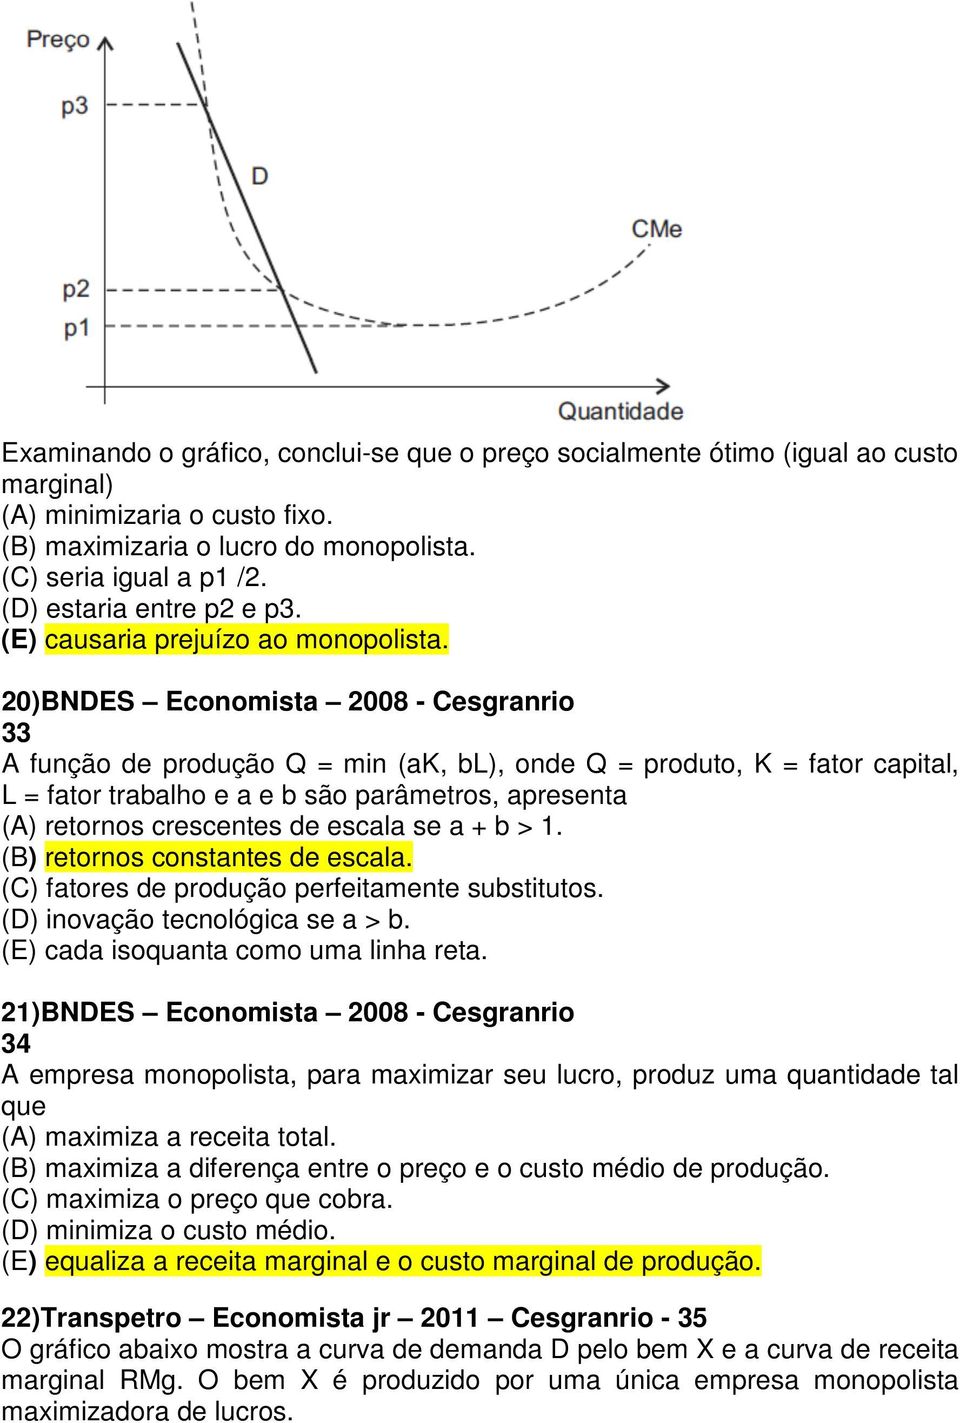 20)BNDES Economista 2008 - Cesgranrio 33 A função de produção Q = min (ak, bl), onde Q = produto, K = fator capital, L = fator trabalho e a e b são parâmetros, apresenta (A) retornos crescentes de